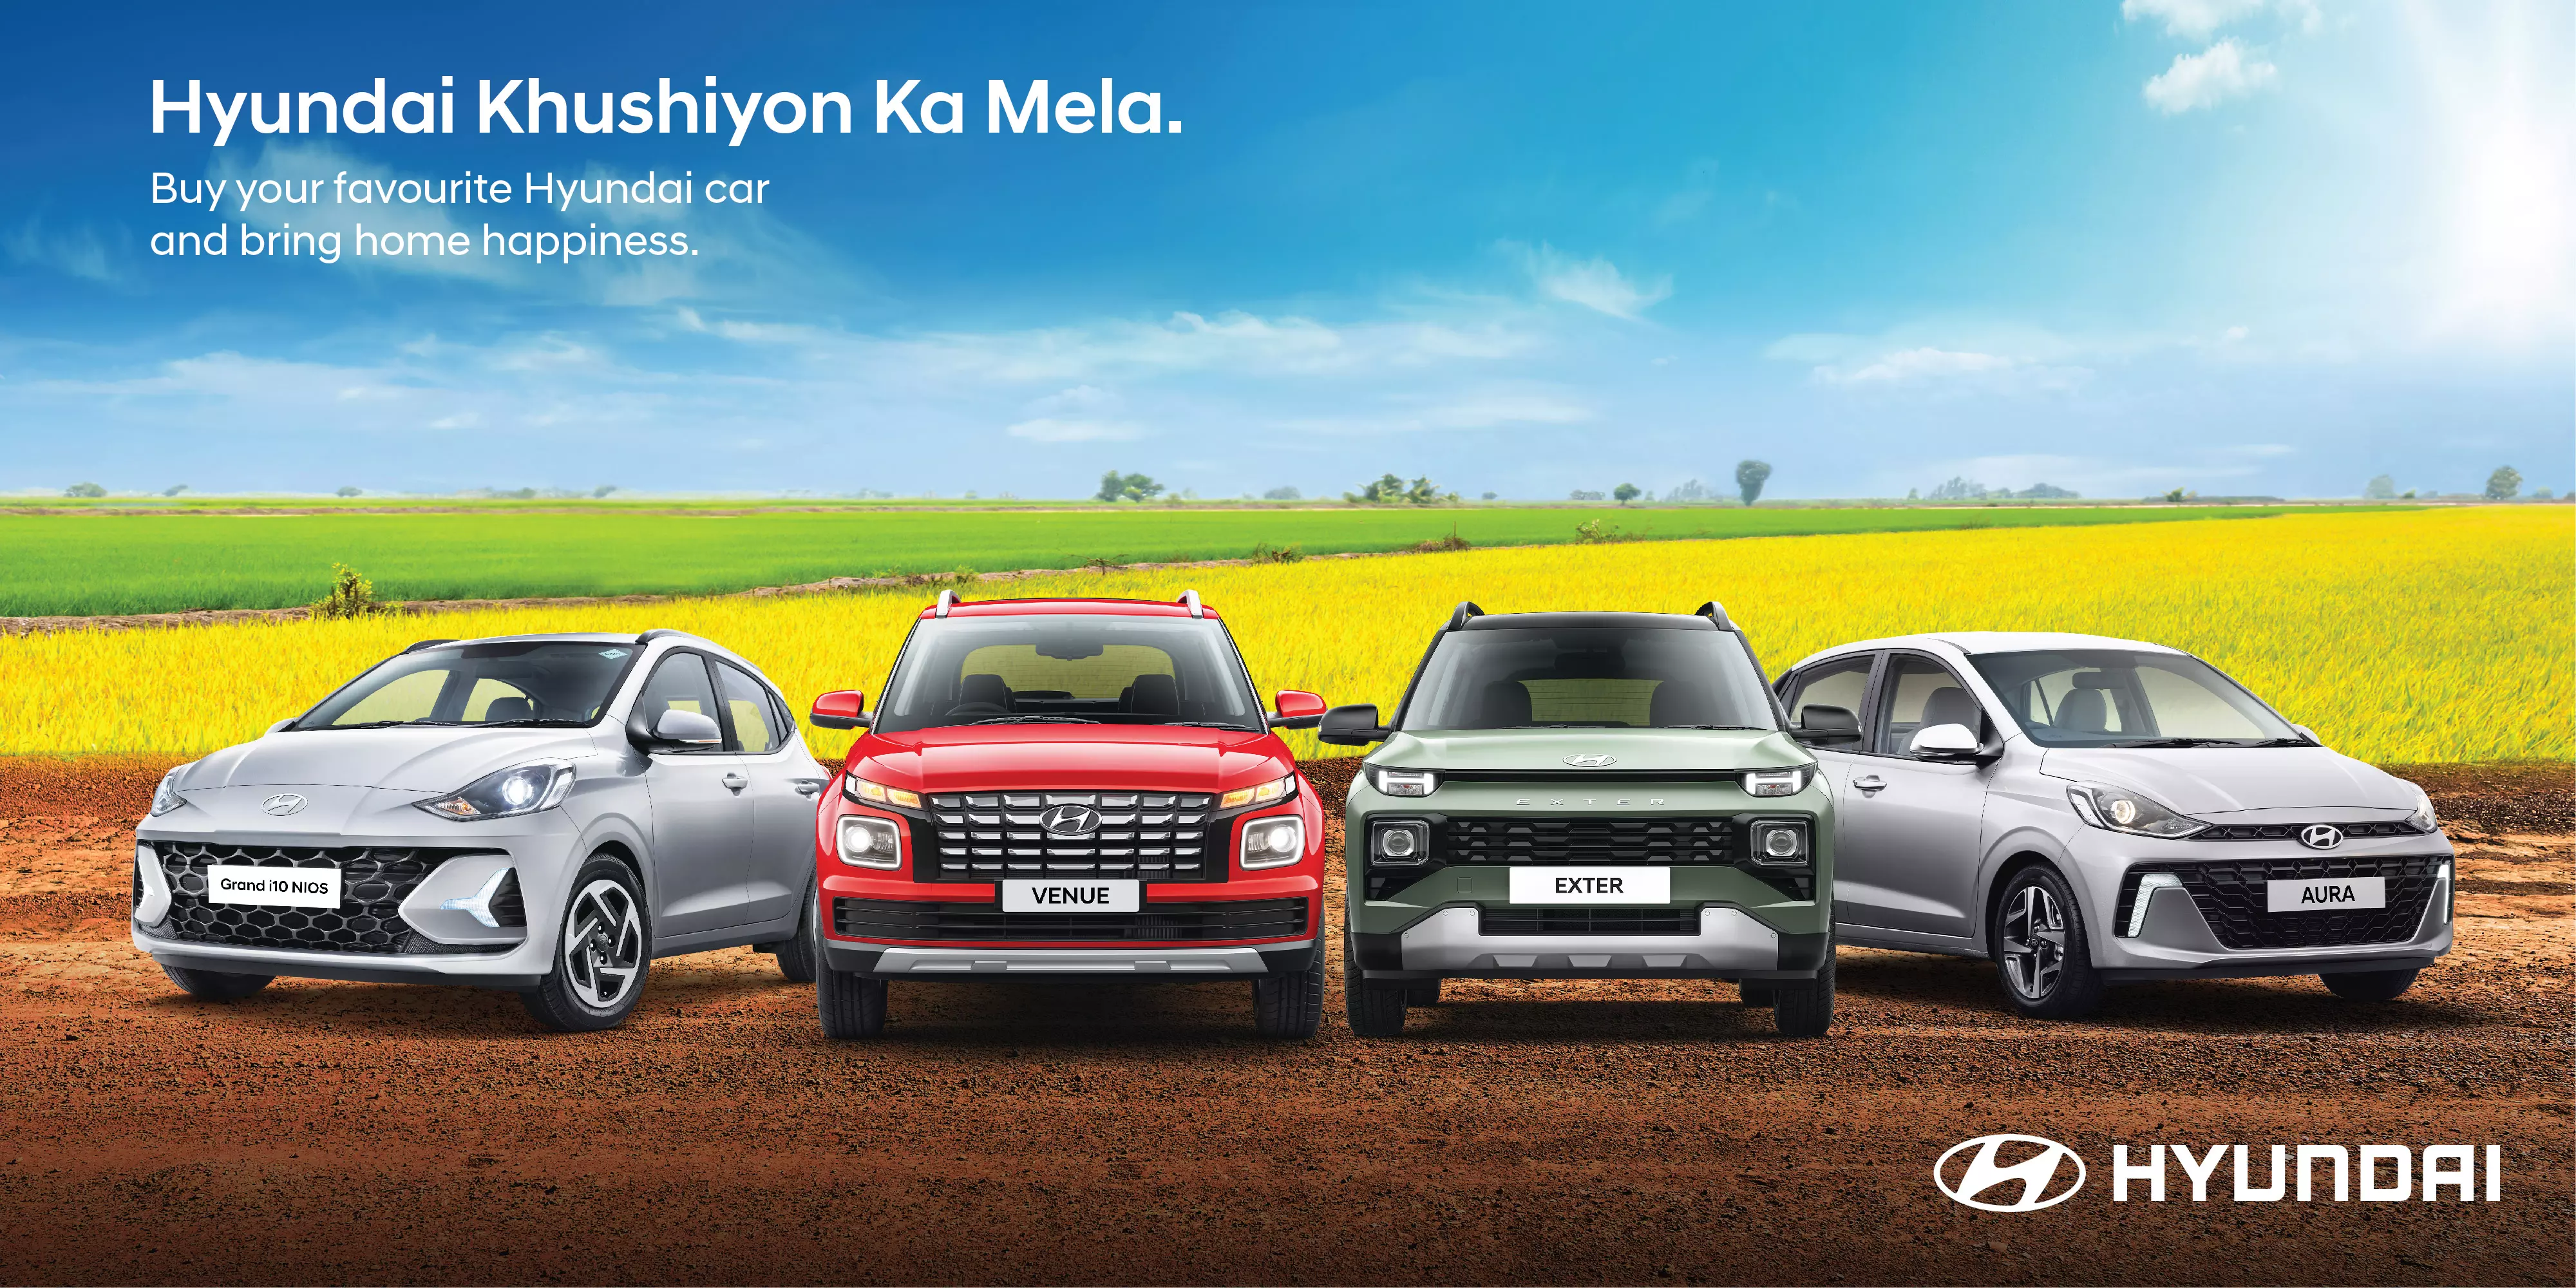 Hyundai Khushiyon ka Mela: Progress for Humanity